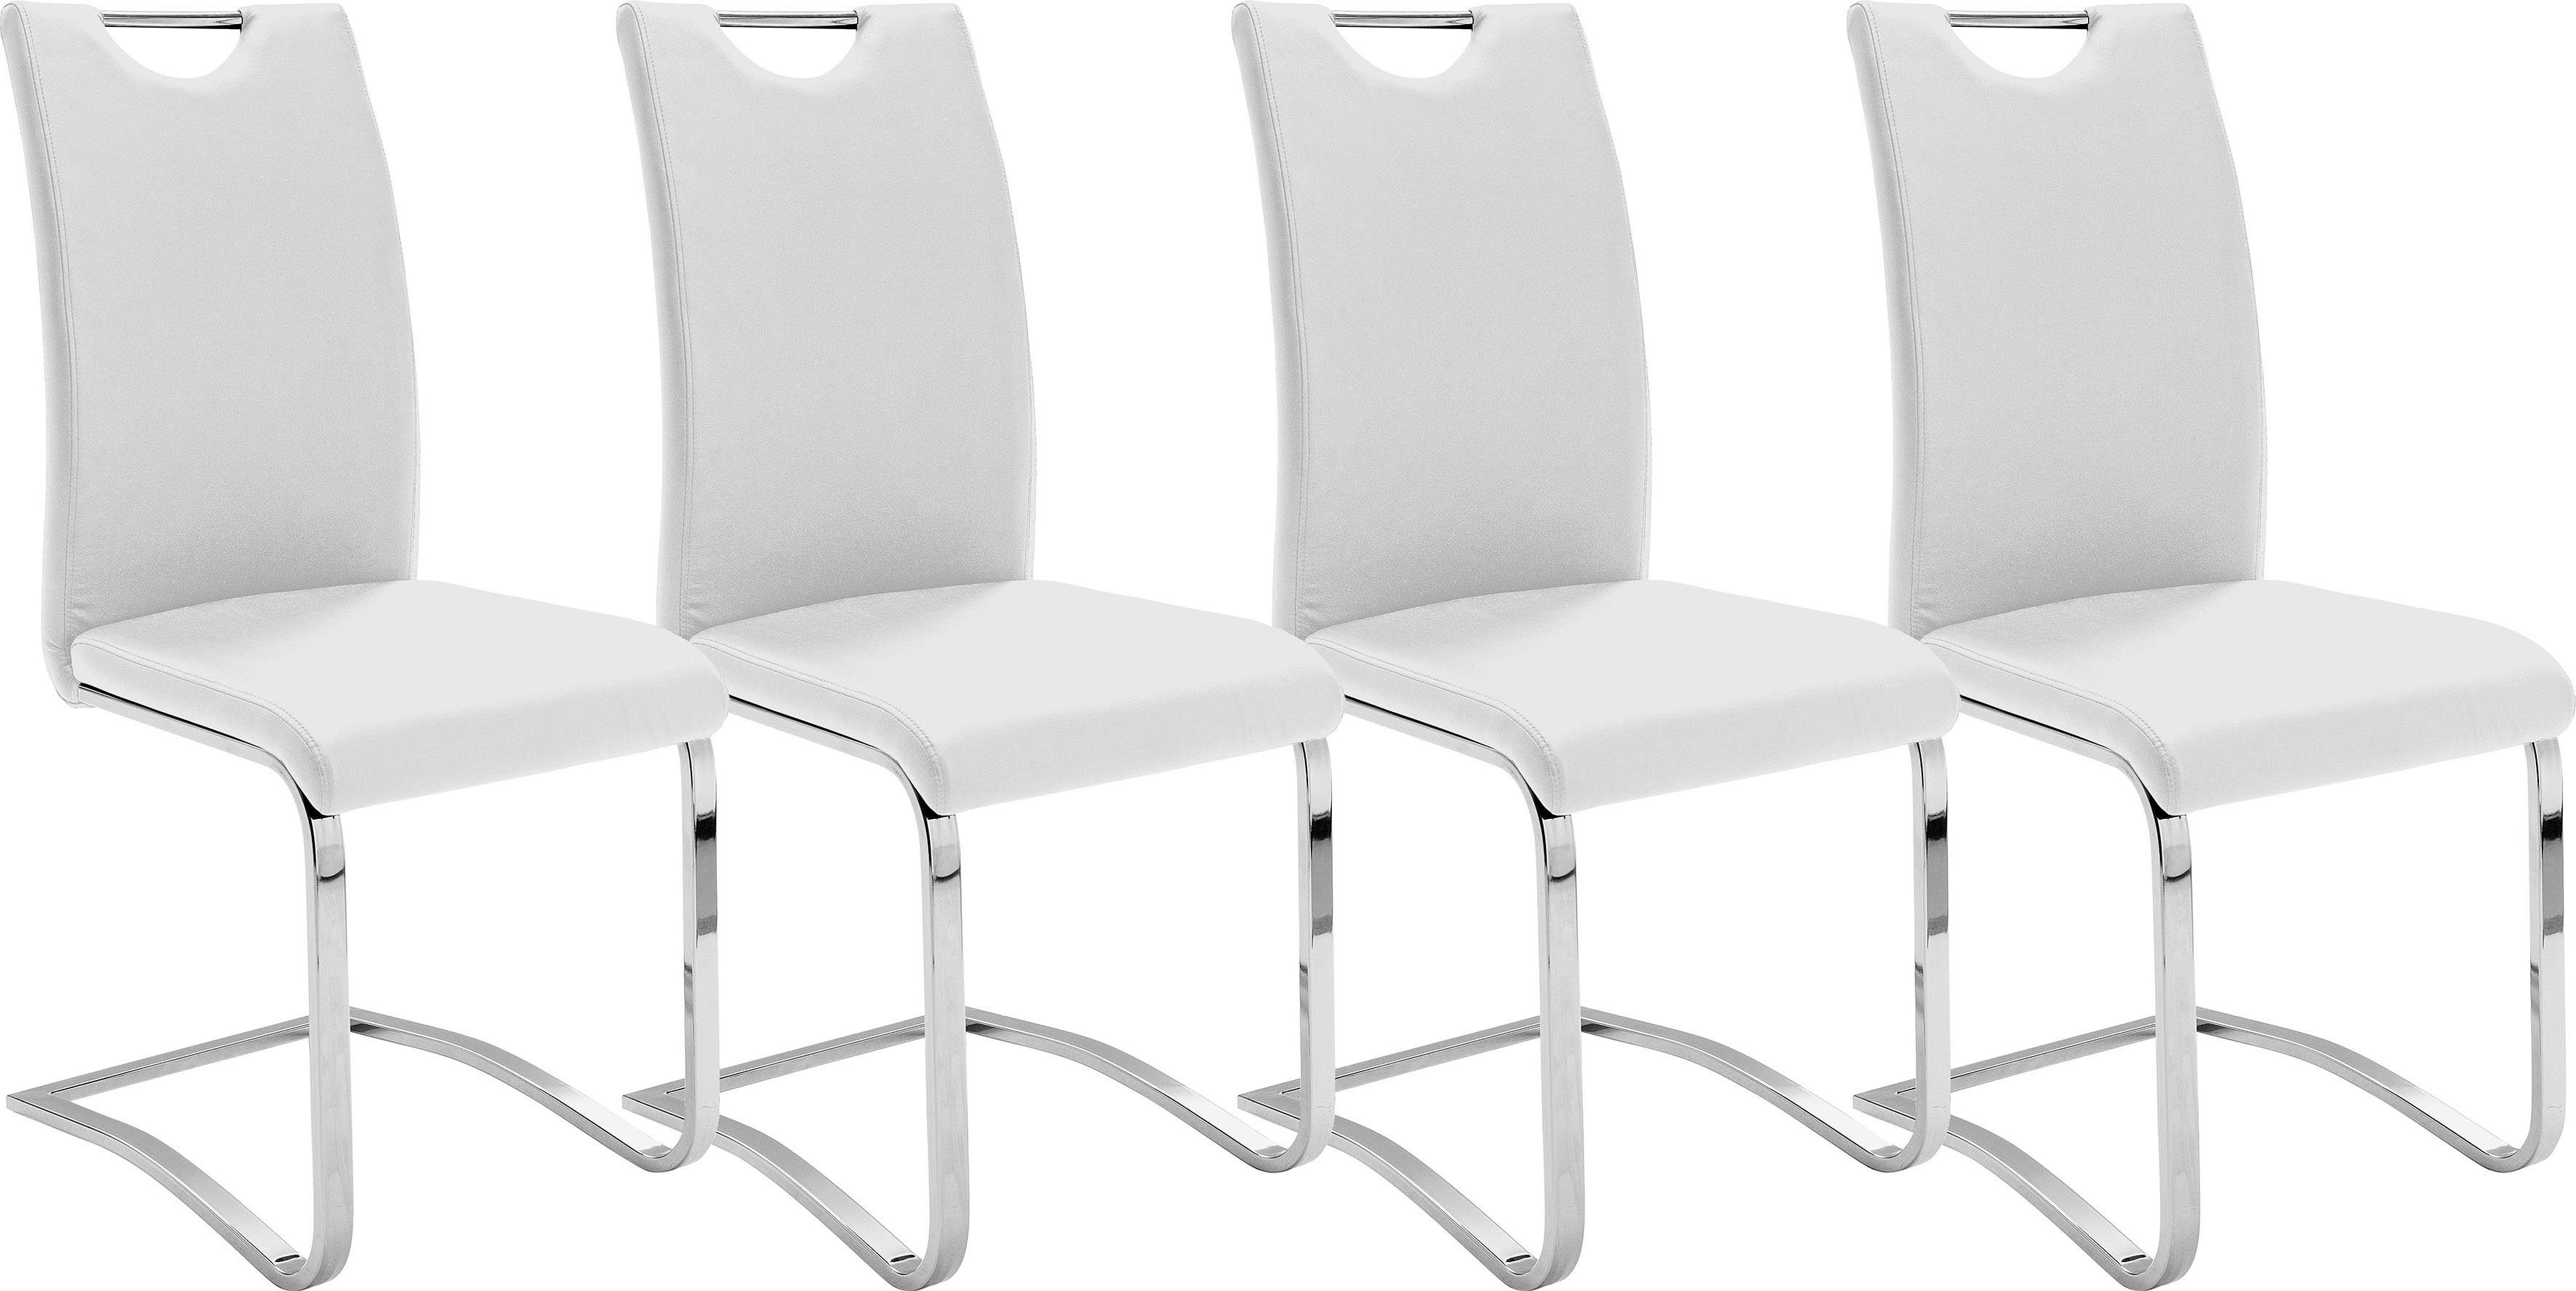 Weiß Kunstlederbezug, | kg Köln 120 belastbar furniture St), Freischwinger Weiß (Set, 4 Stuhl Komfortsitzhöhe, MCA bis